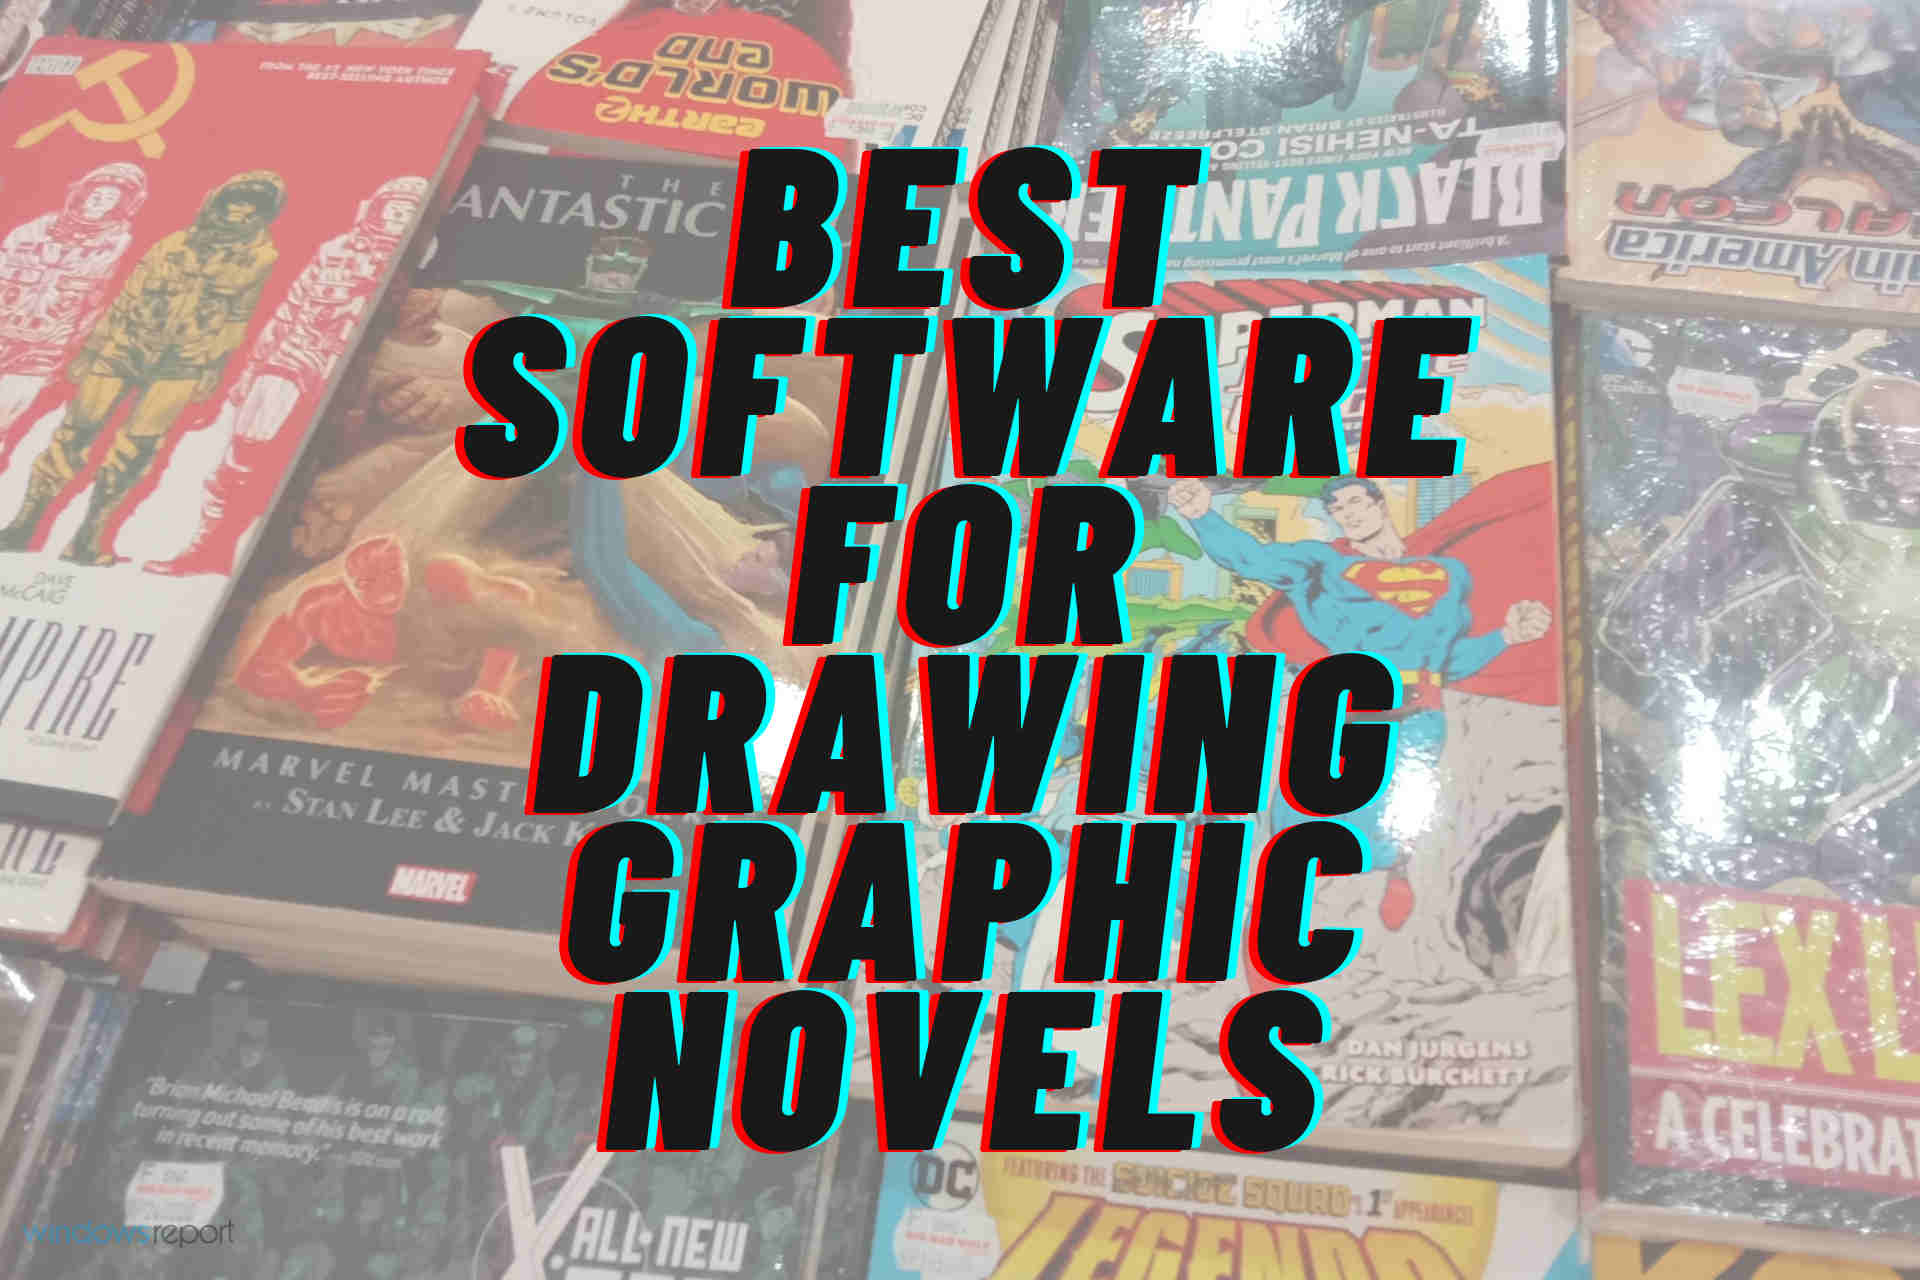 Deviate plaintiff door mirror 4 best software for drawing graphic novels